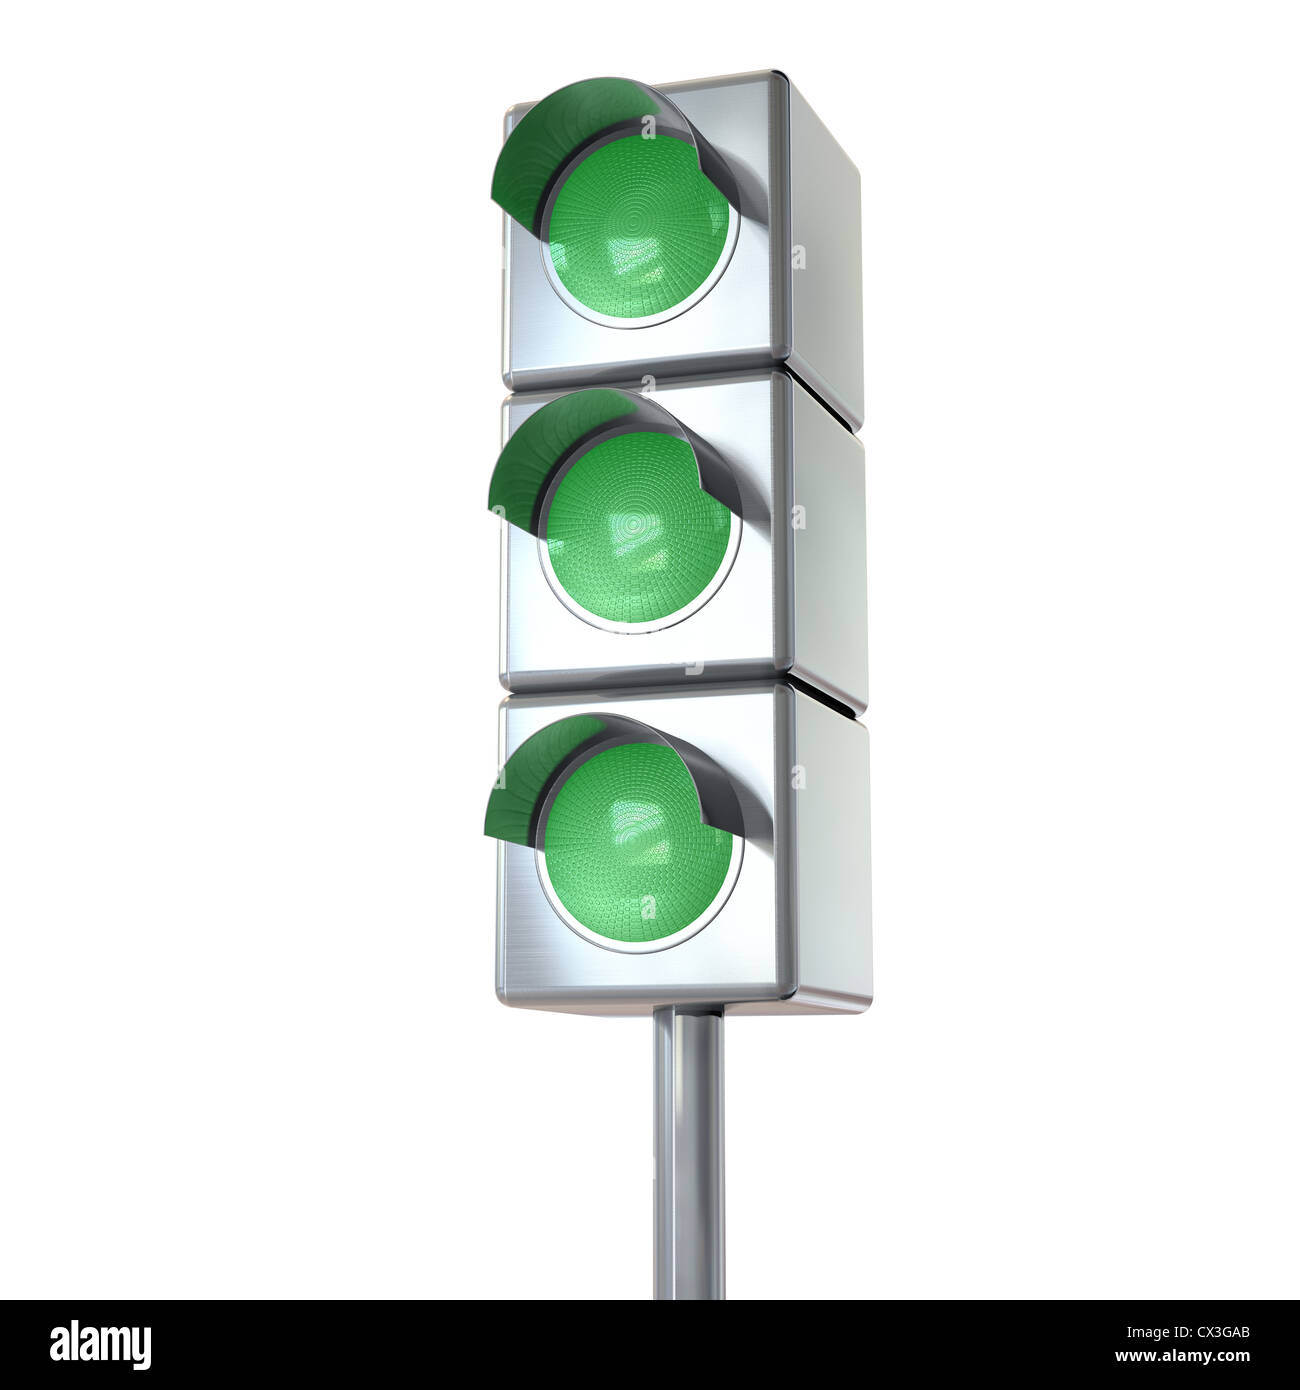 Ampel 3 mit grünen Lichtern auf weiß - Voyants verts sur fond blanc Banque D'Images